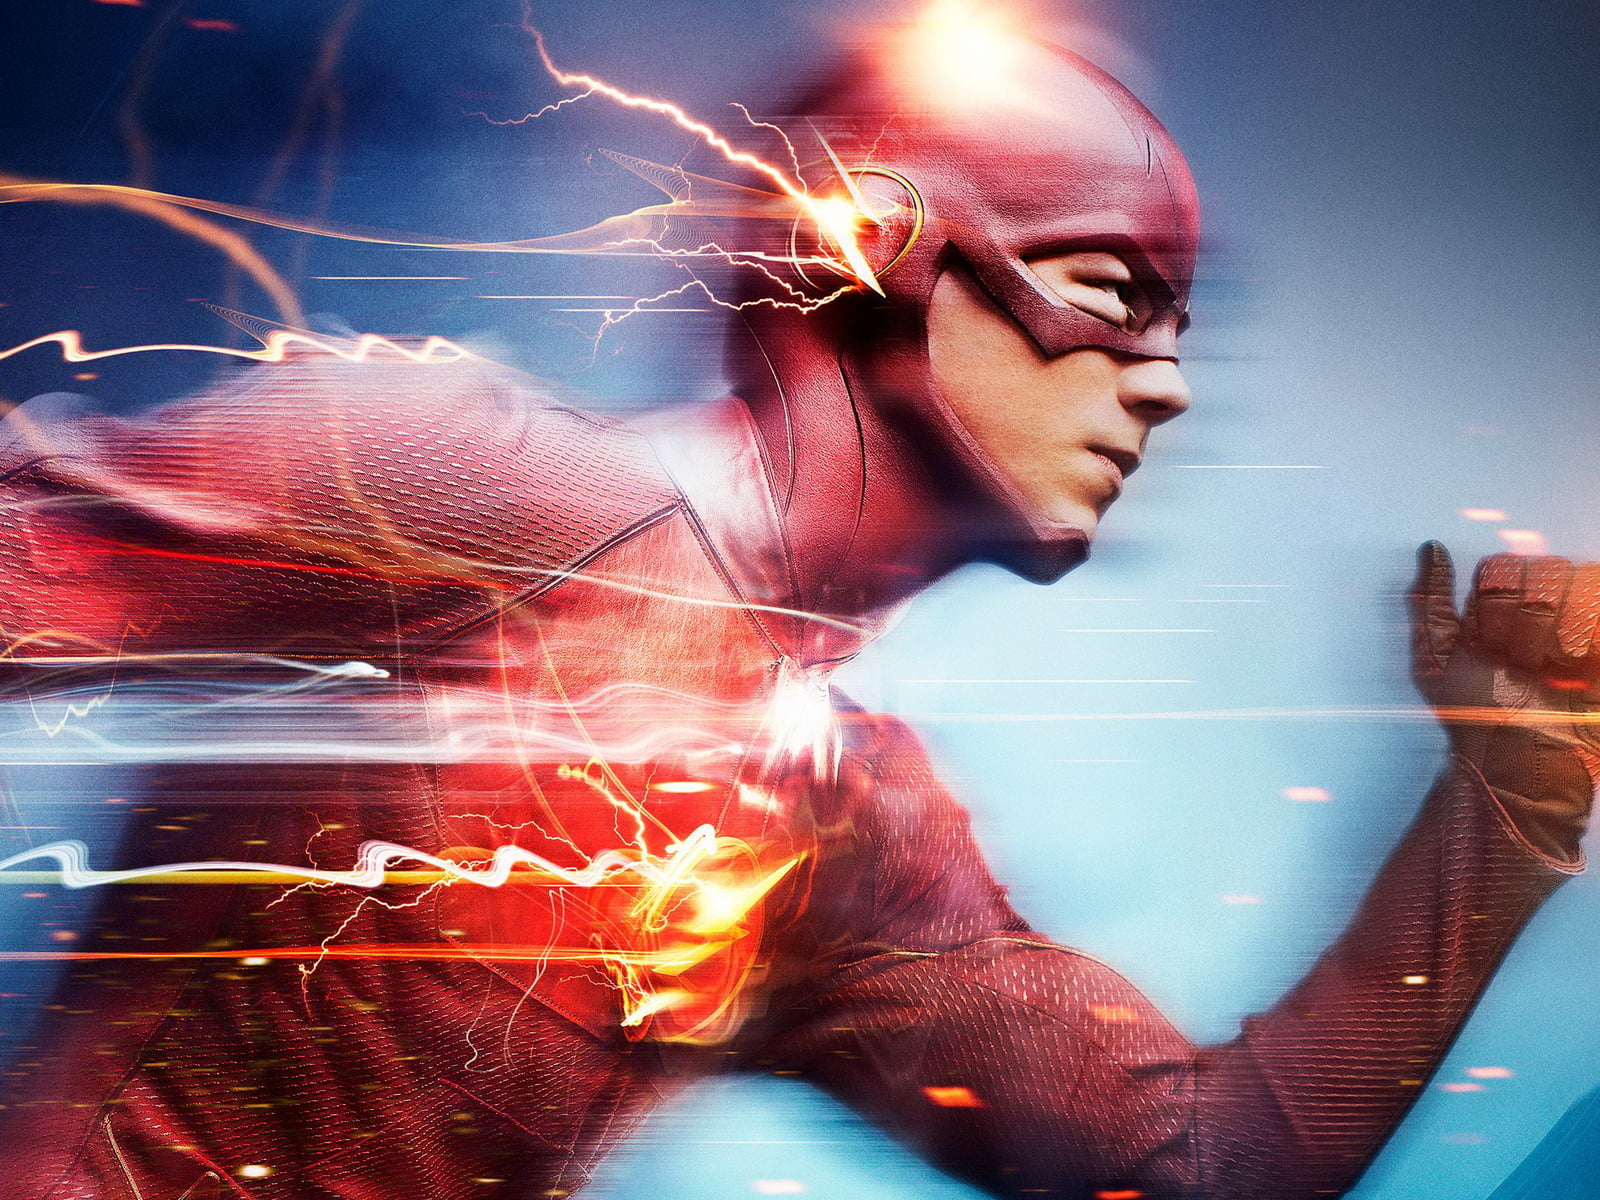 The Flash running illustration HD wallpaper | Wallpaper Flare